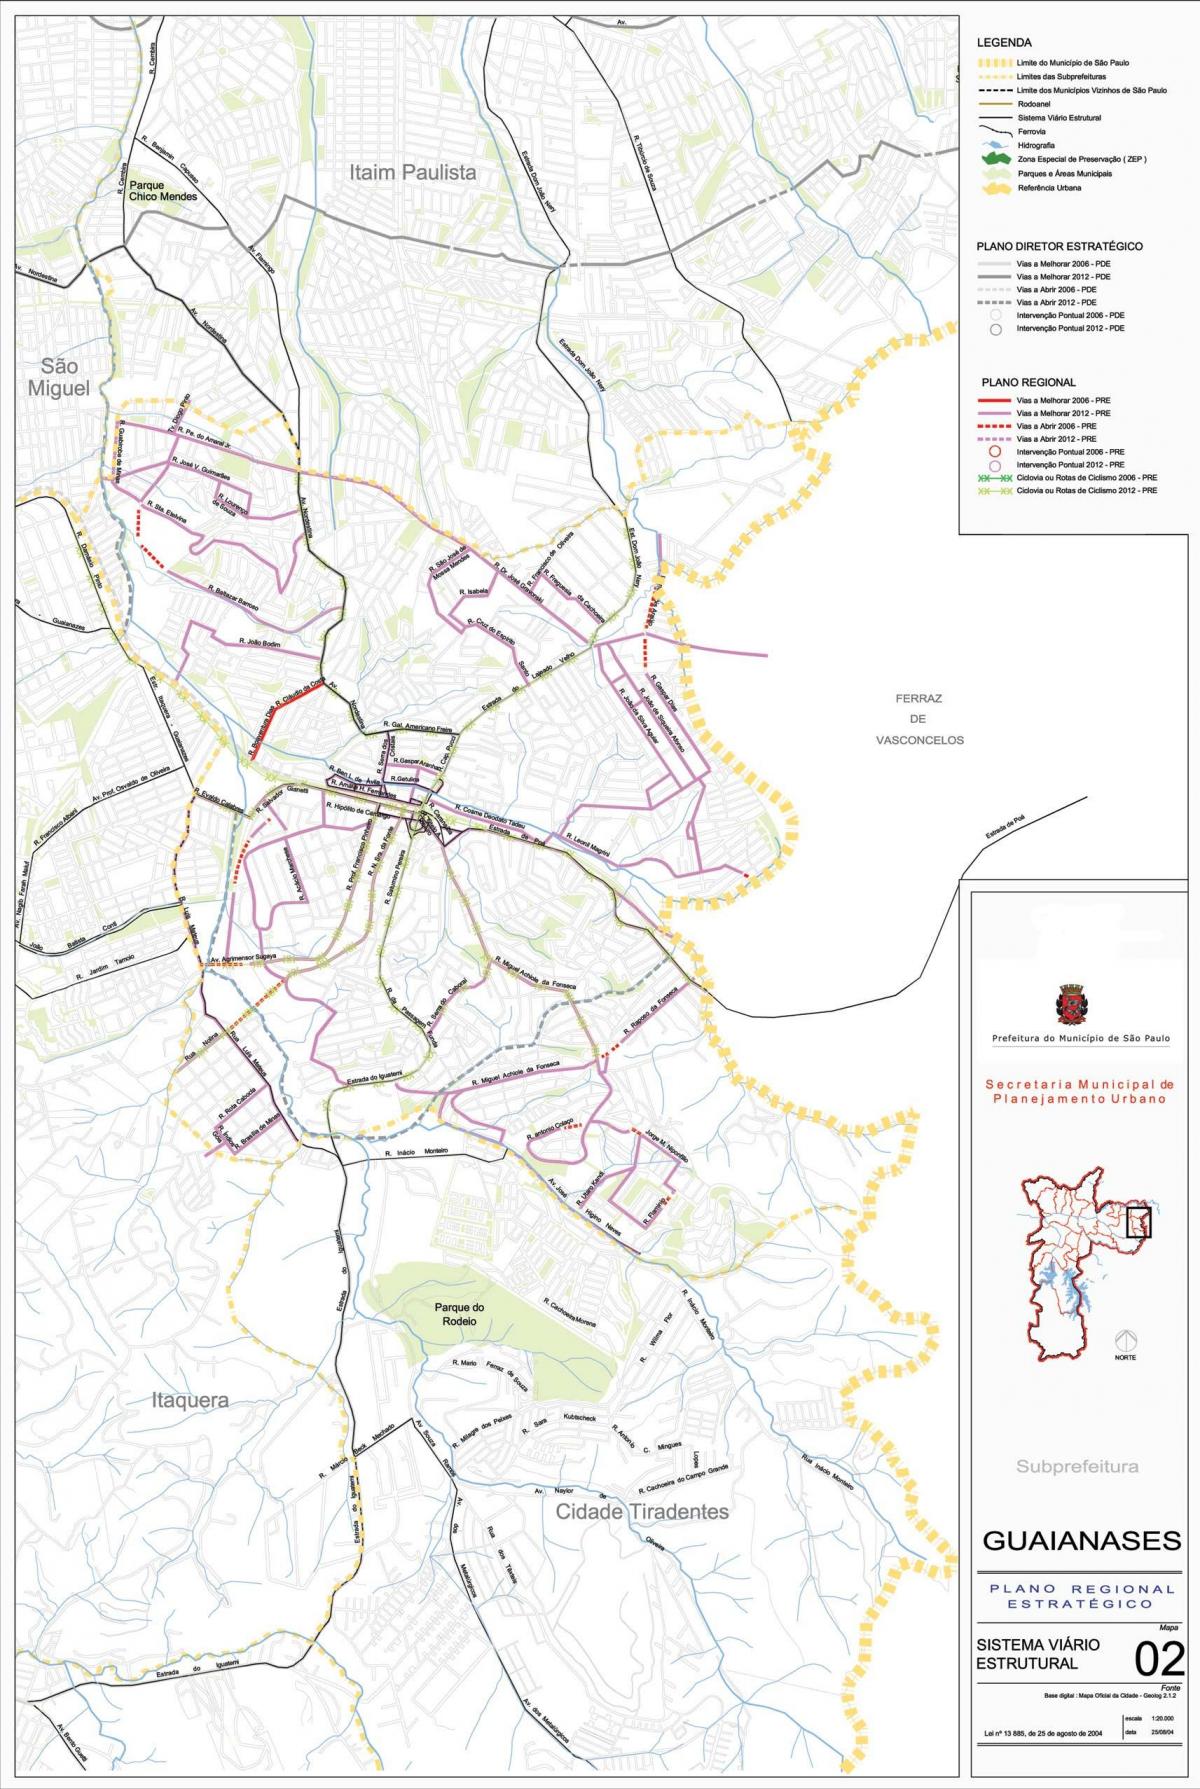 Kart over Guaianases São Paulo - Veier